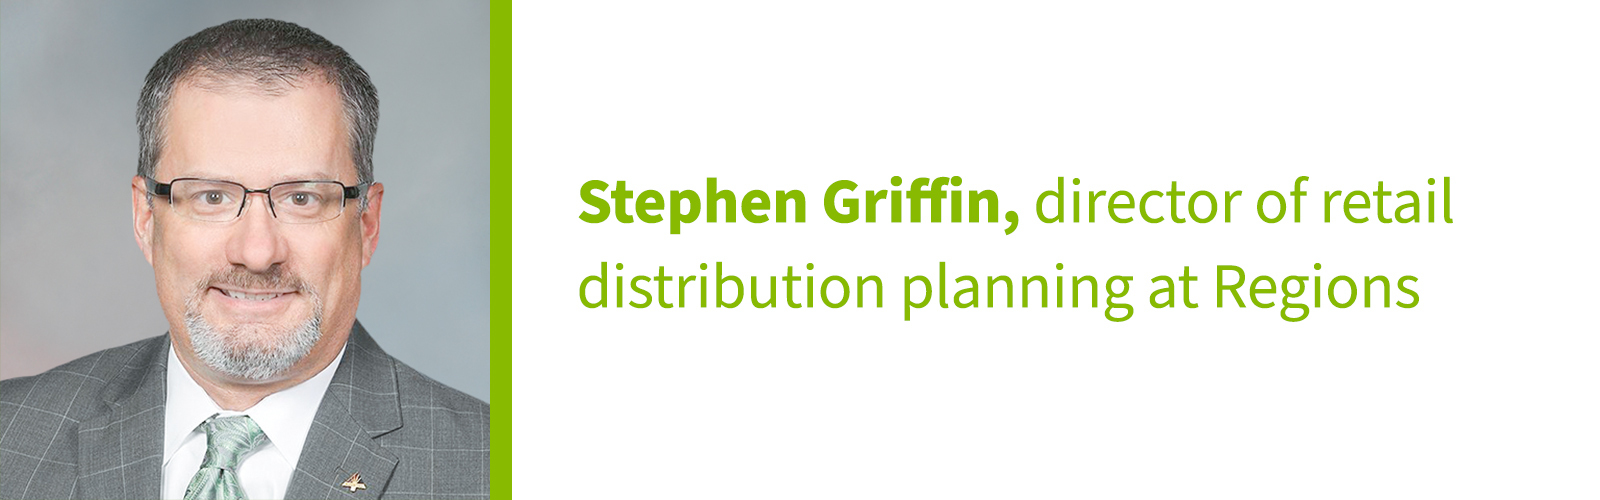 Stephen Griffin